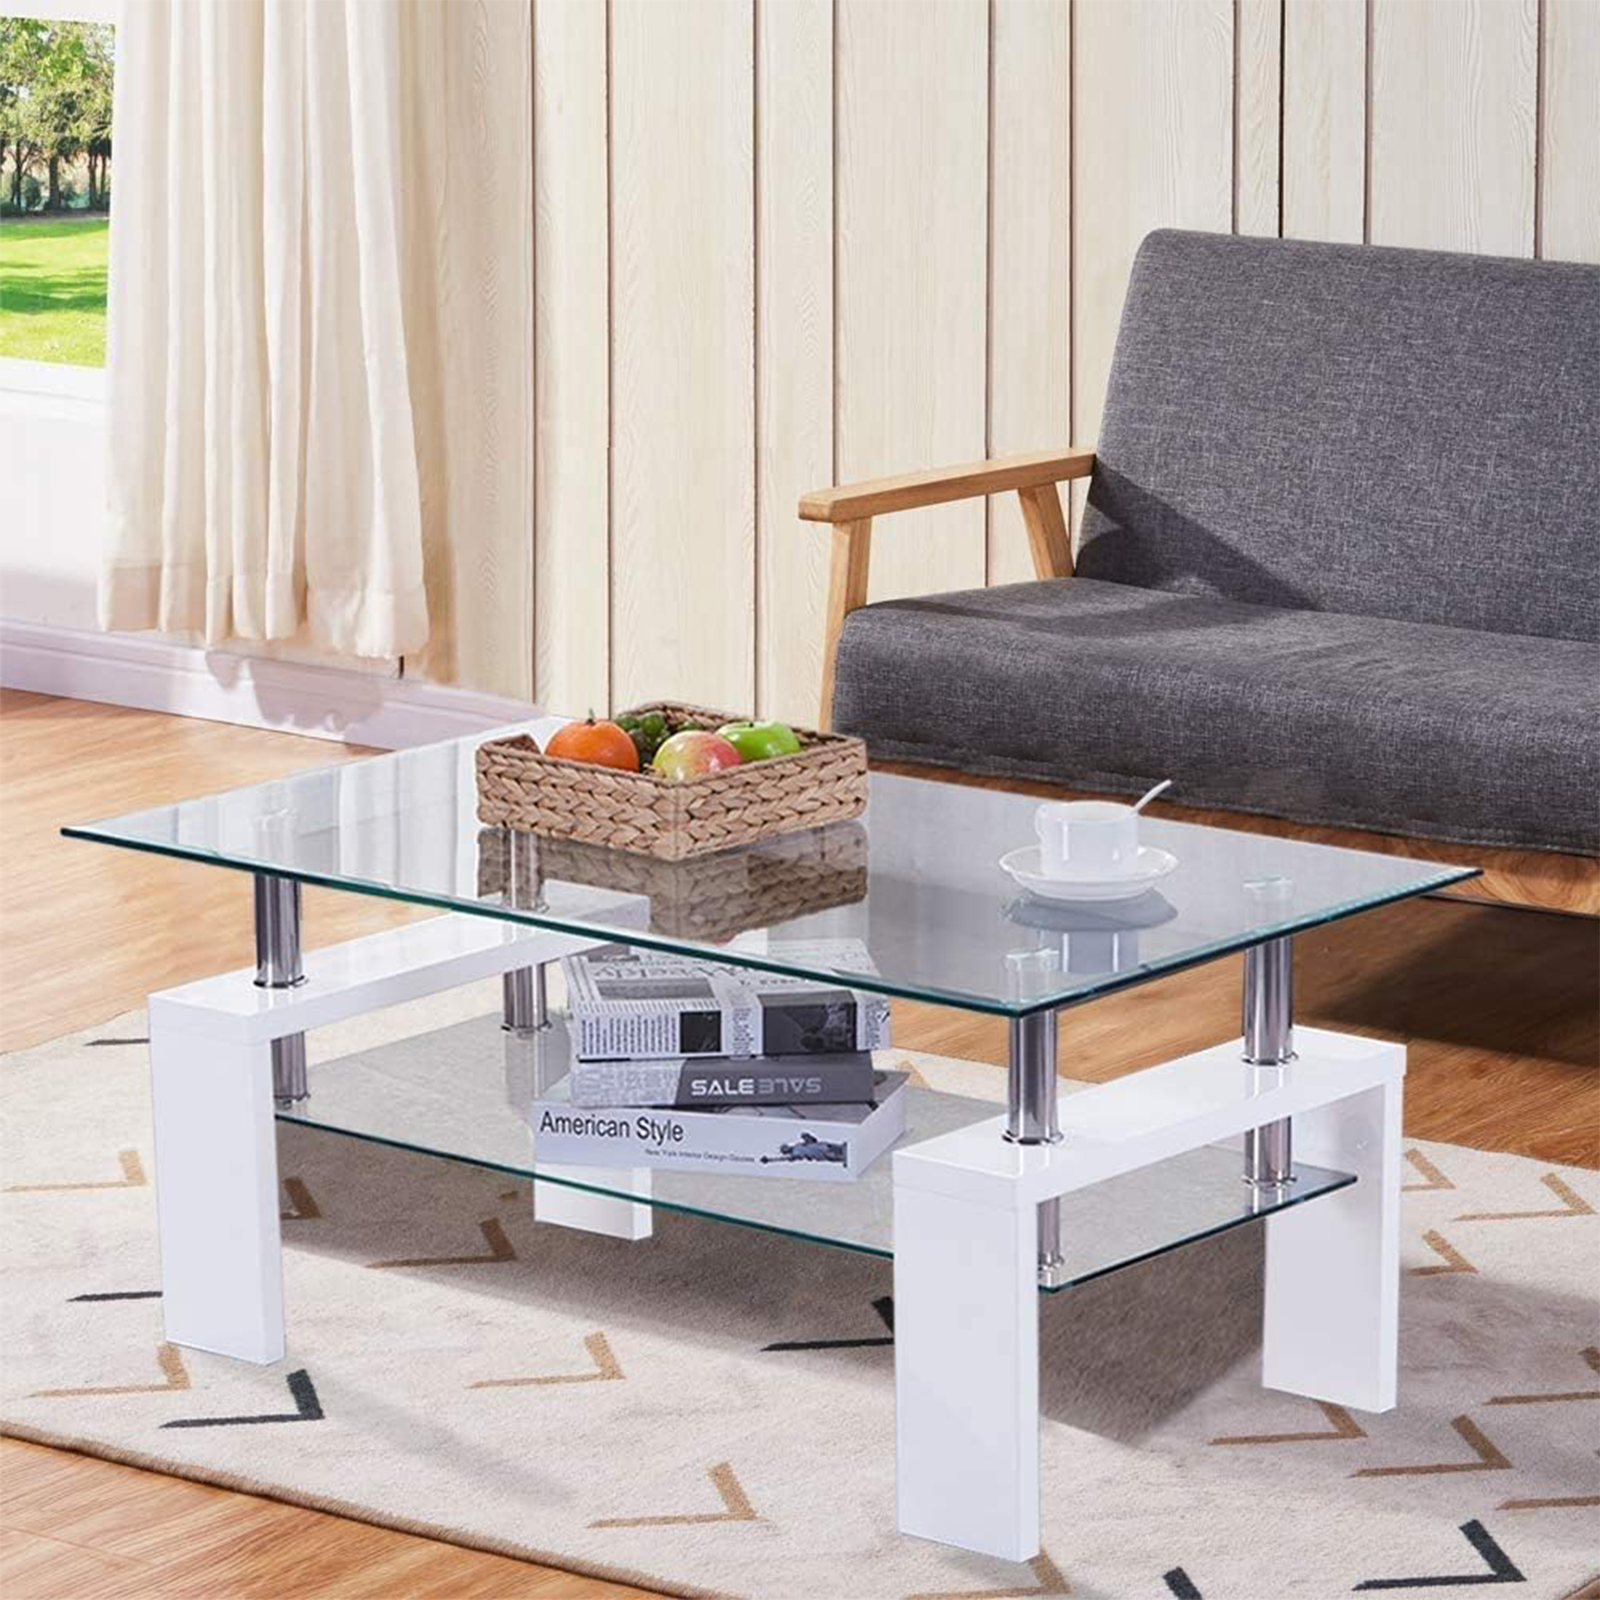 Tavolino da soggiorno basso in legno con ripiano in vetro cm 100x60 45h